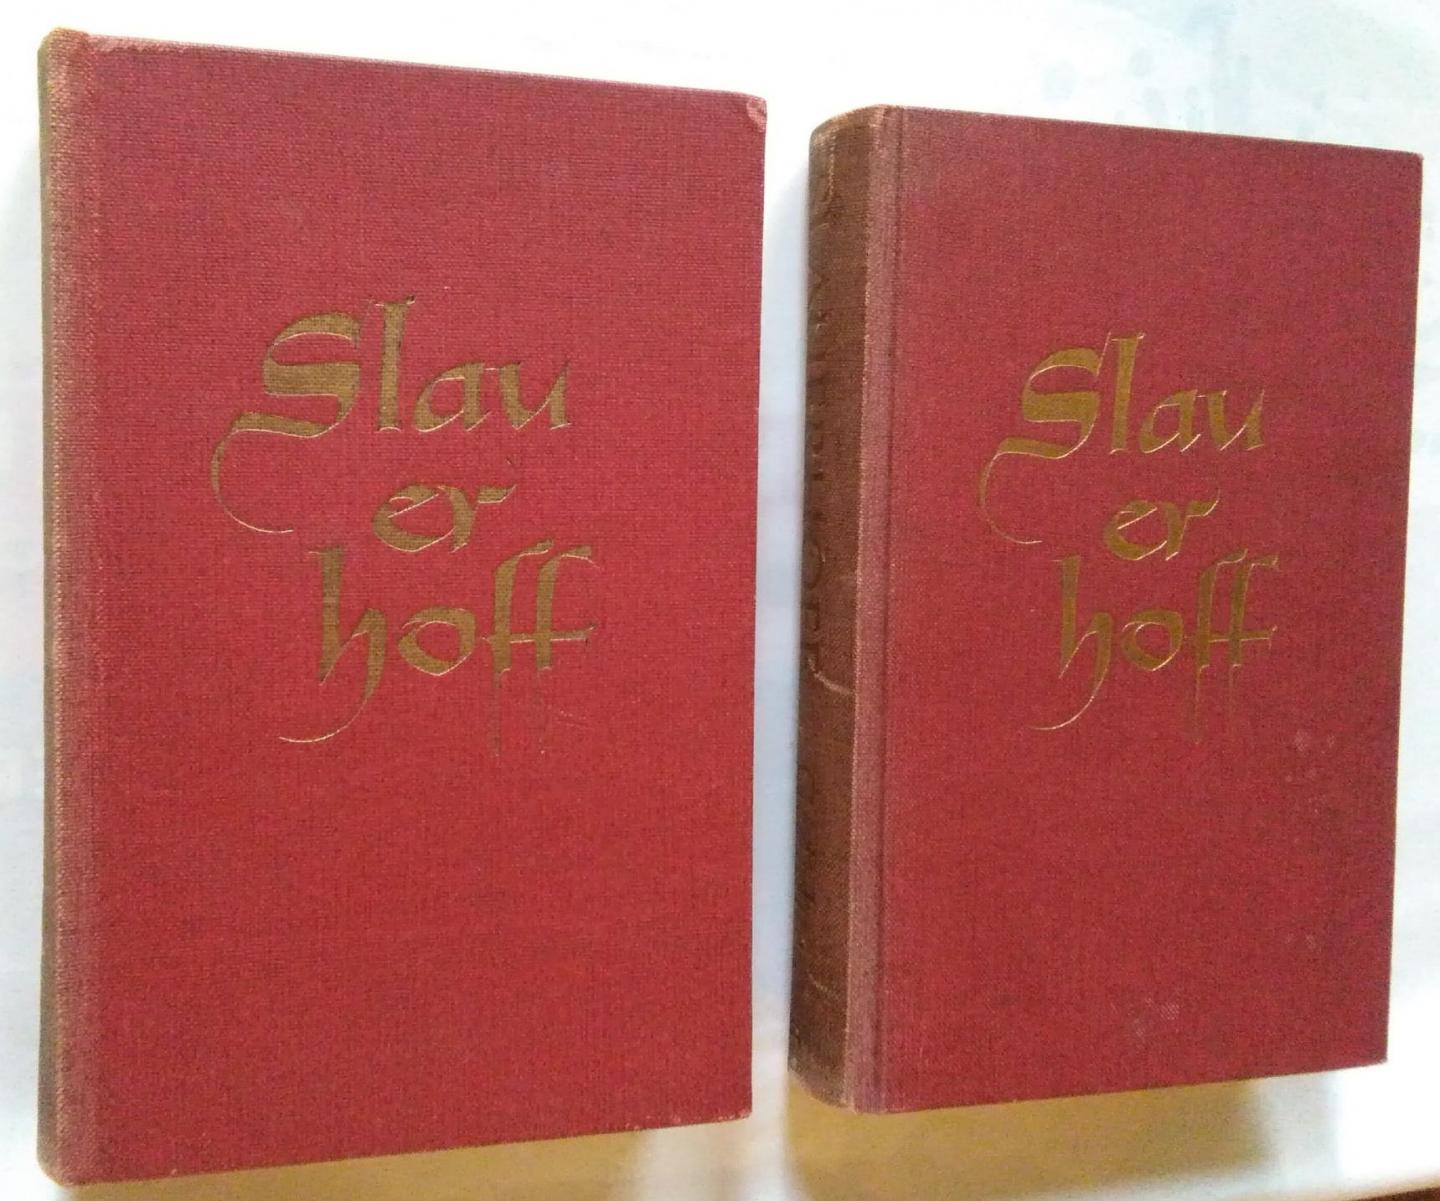 Slauerhoff - Verzamelde gedichten, 2 delen met aanbiedingsfolder van de uitgever